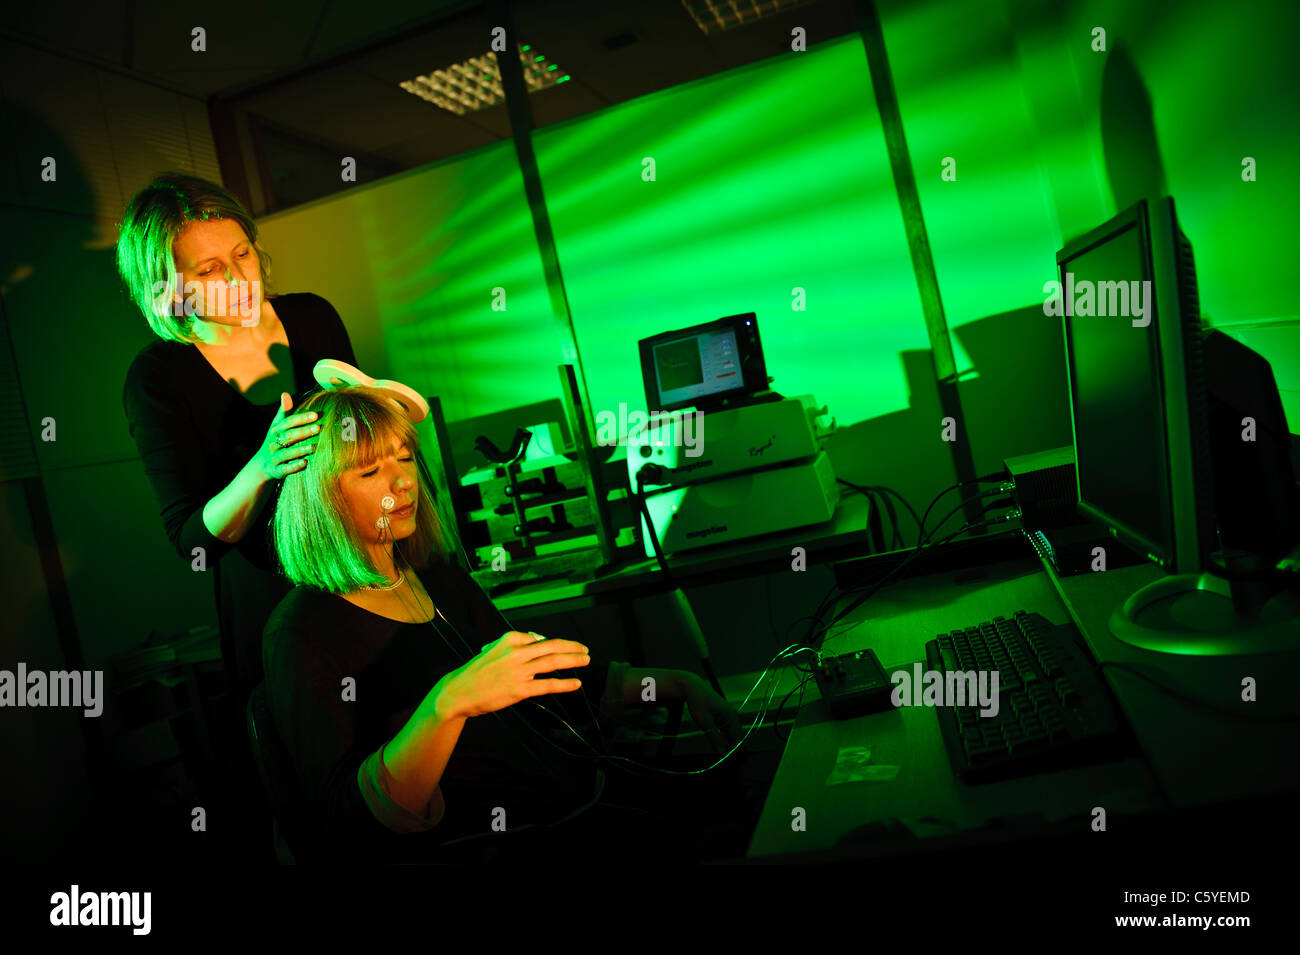 Neurowissenschaftler mit Schlüssel förmigen Paddel Transcranial magnetische Anregung TMS Thema sitzen im Labor Lit grüne durchführen Stockfoto